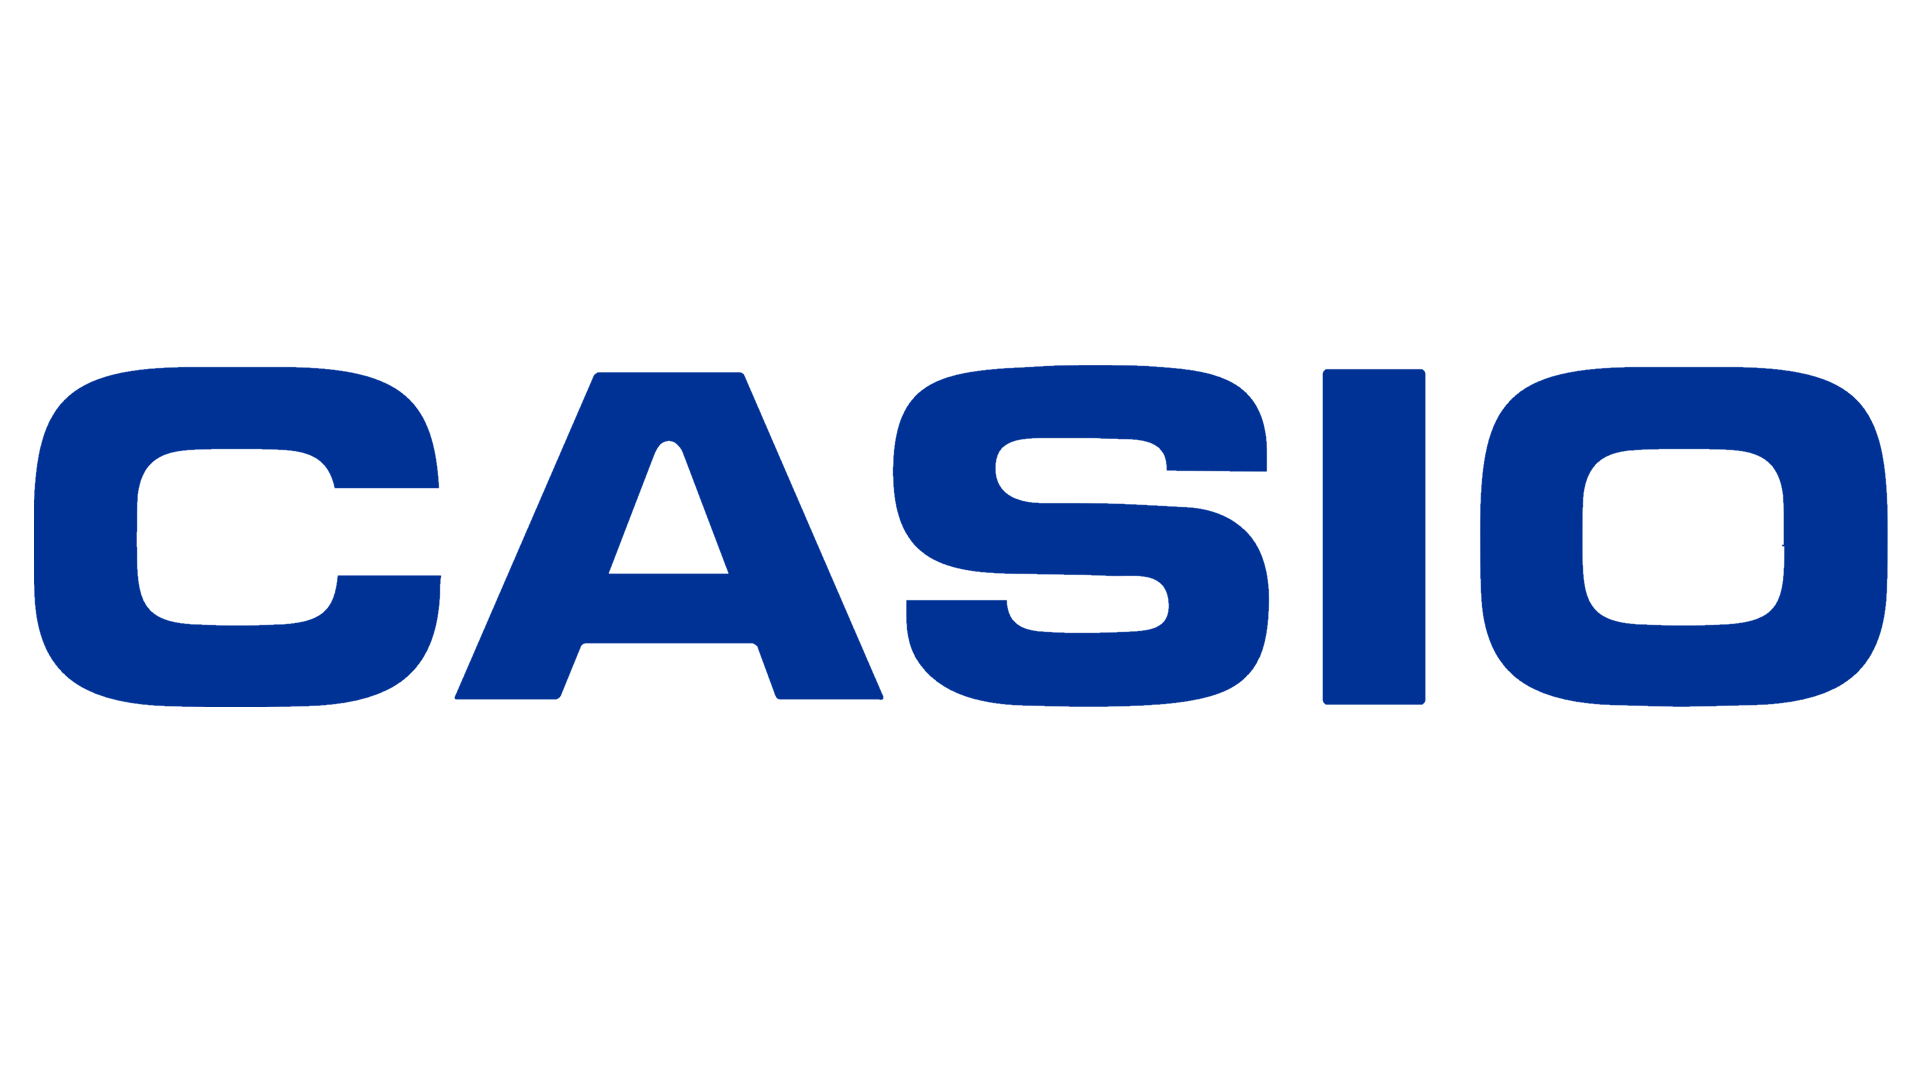 Casio-Logo